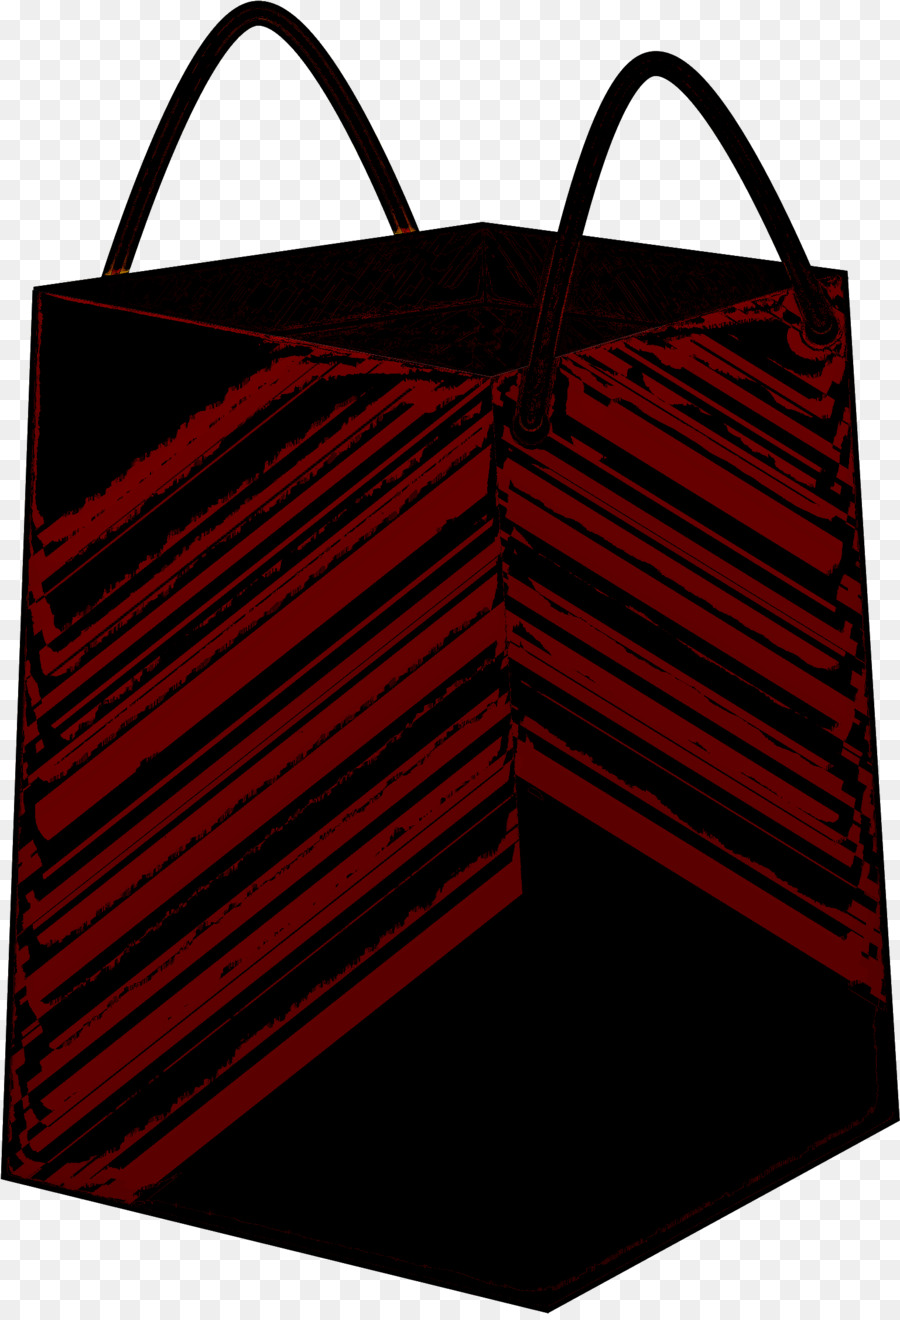 mẫu túi xách màu đỏ - 